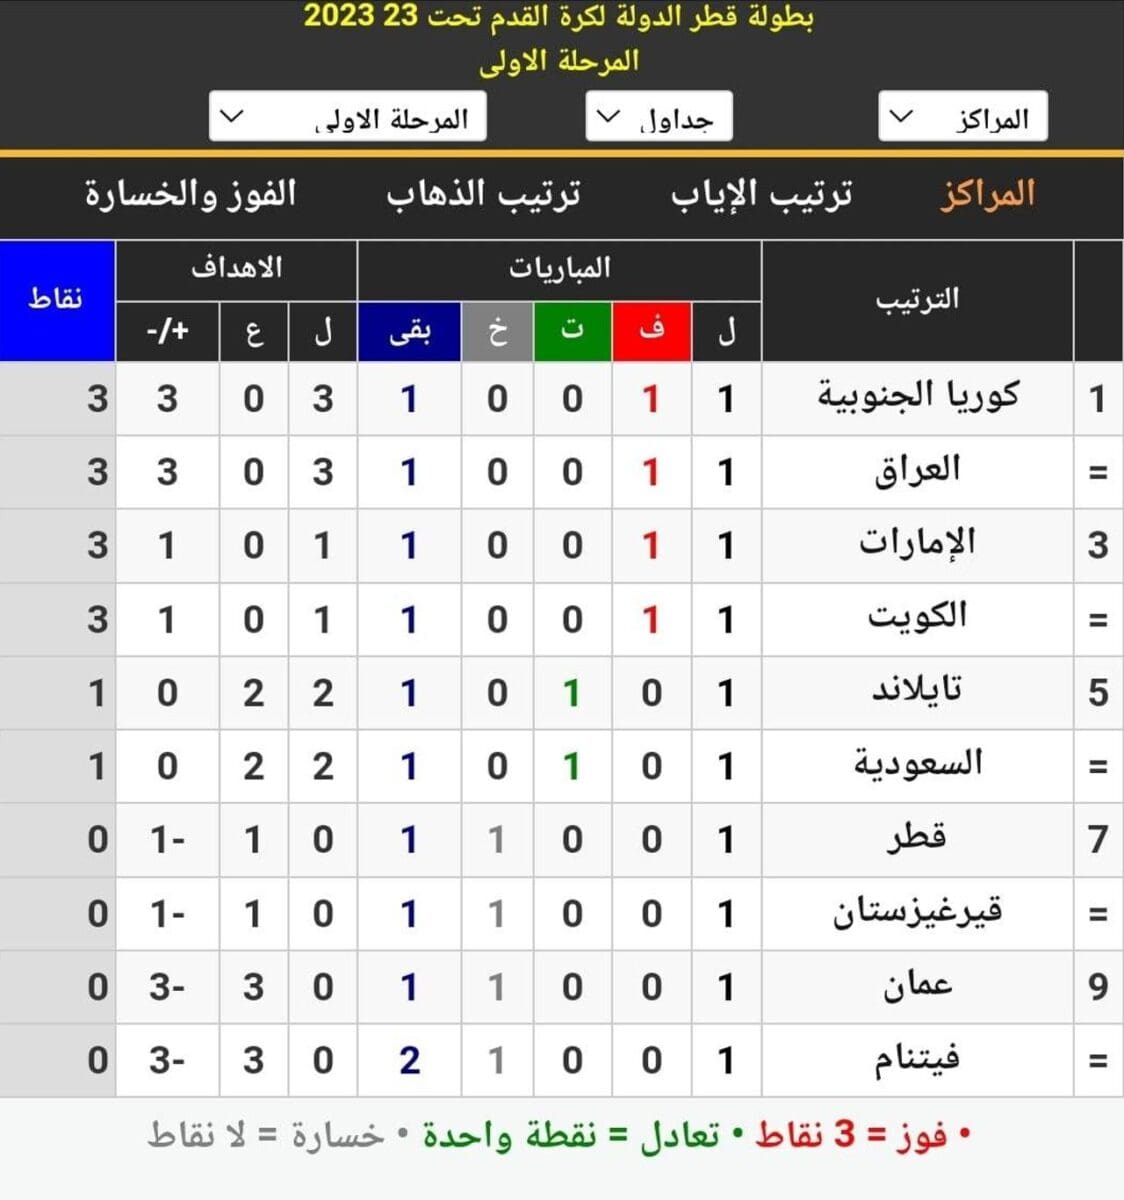 جدول ترتيب المجموعة في بطولة قطر الدولية الودية لكرة القدم 2023 تحت 23 سنة قبل انطلاق مباريات الجولة الثانية